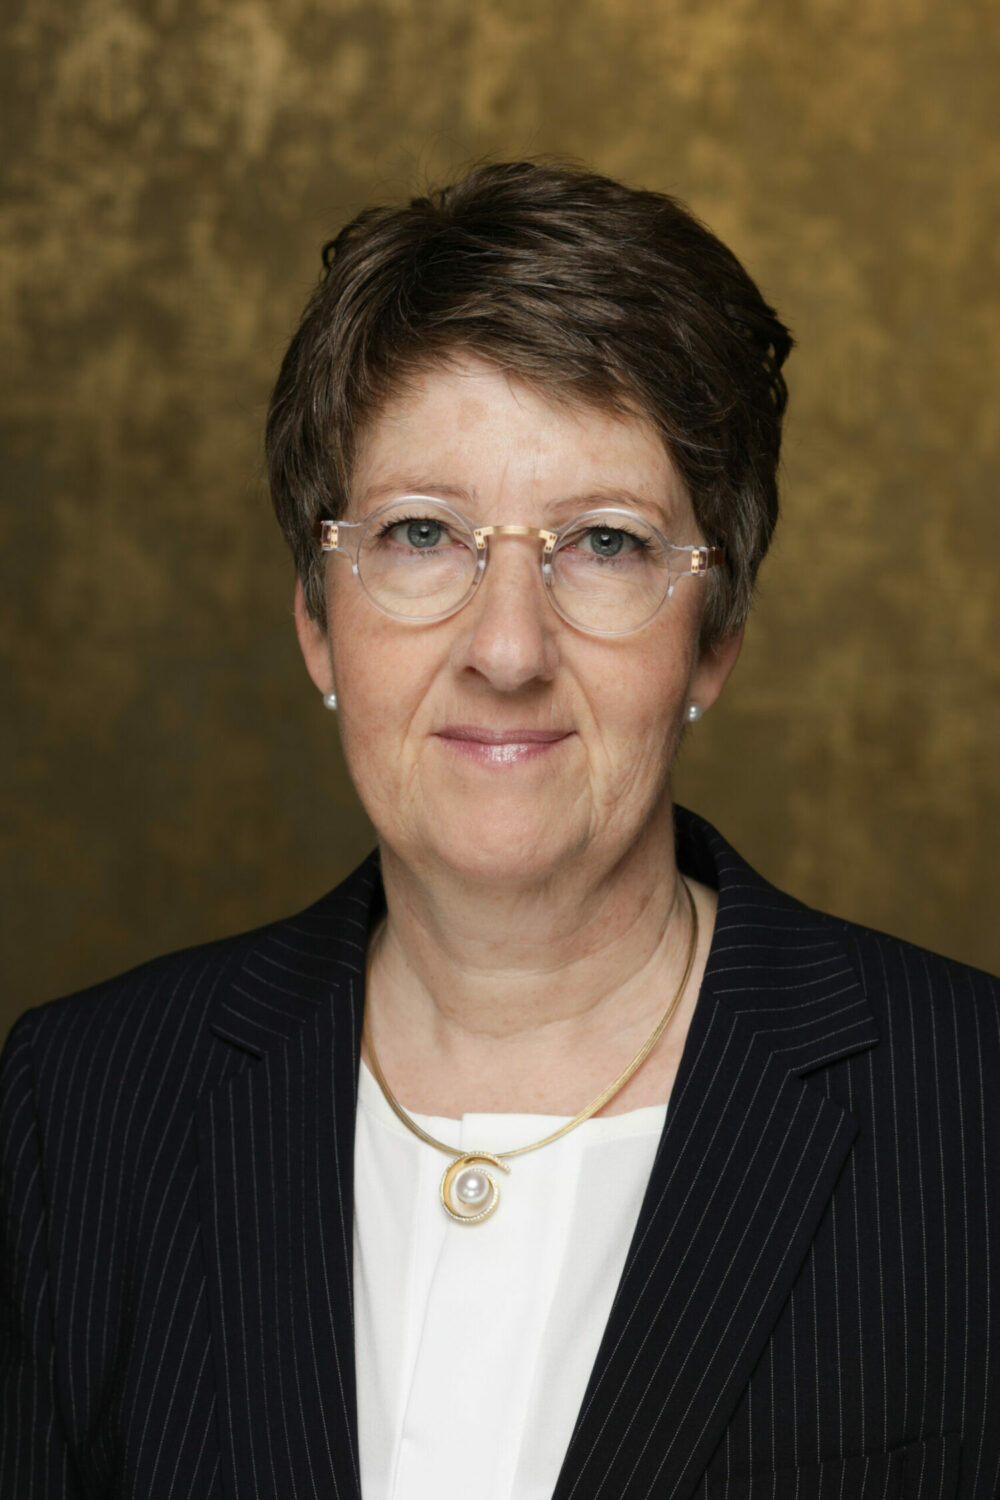 Porträtfoto einer Frau mit dunklen kurzen Haaren und Brille